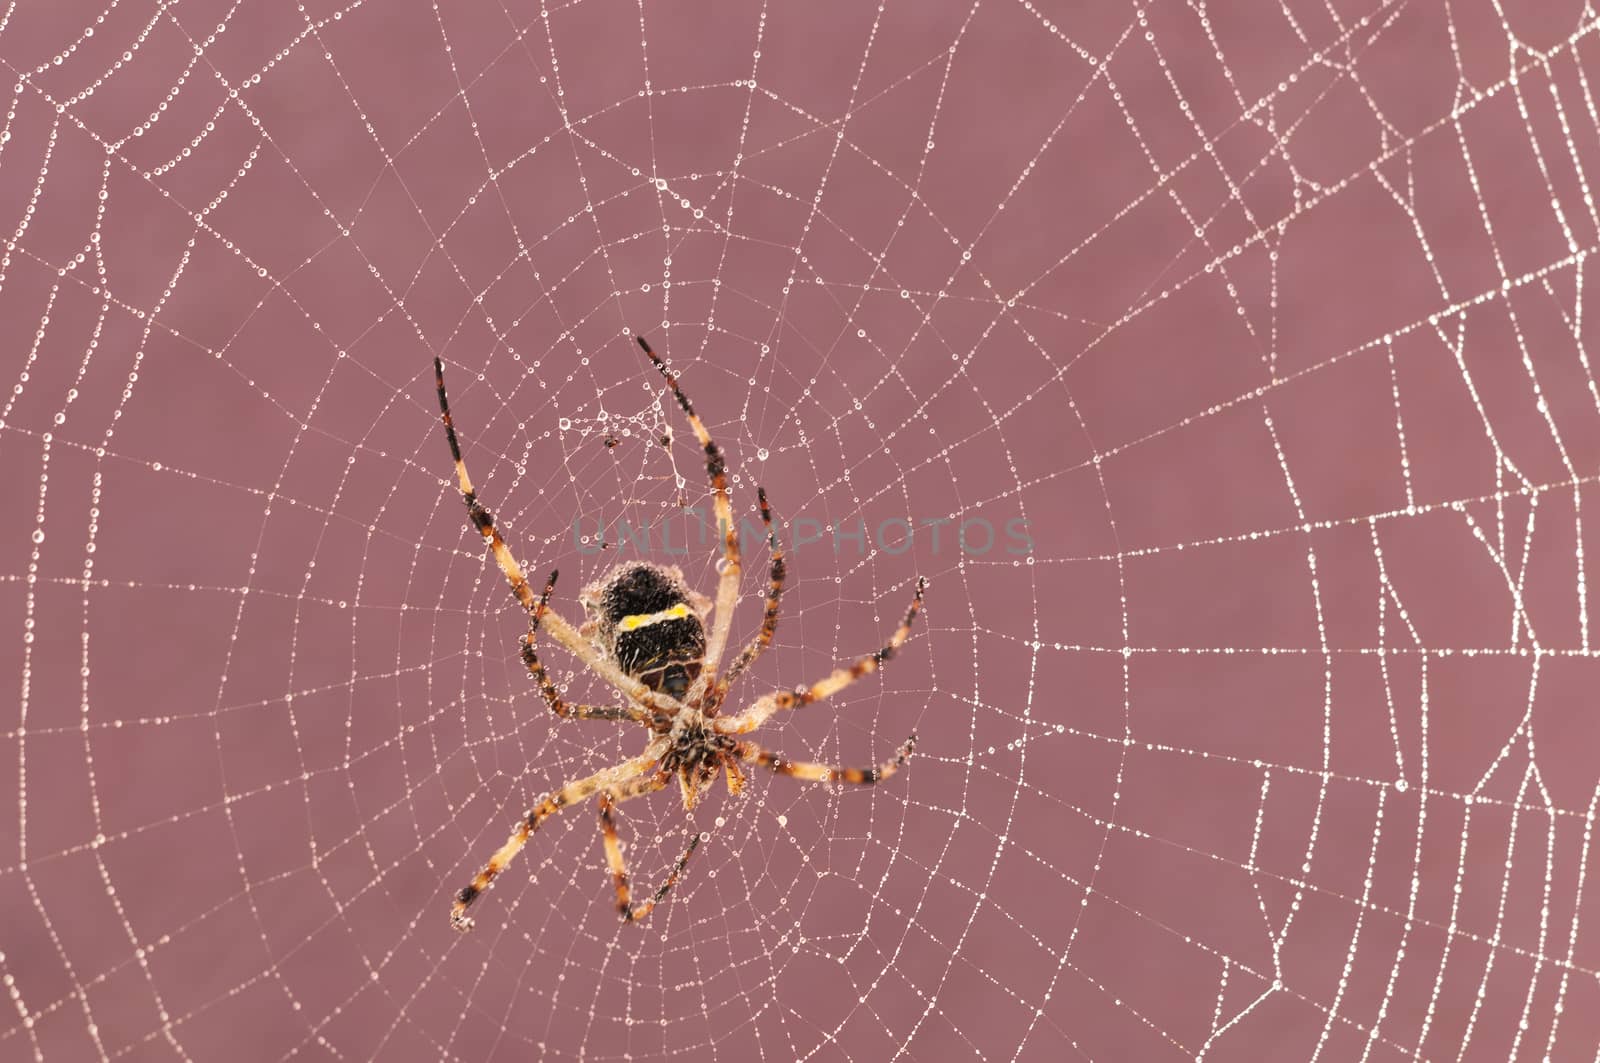 Spider on cobweb by rodrigobellizzi